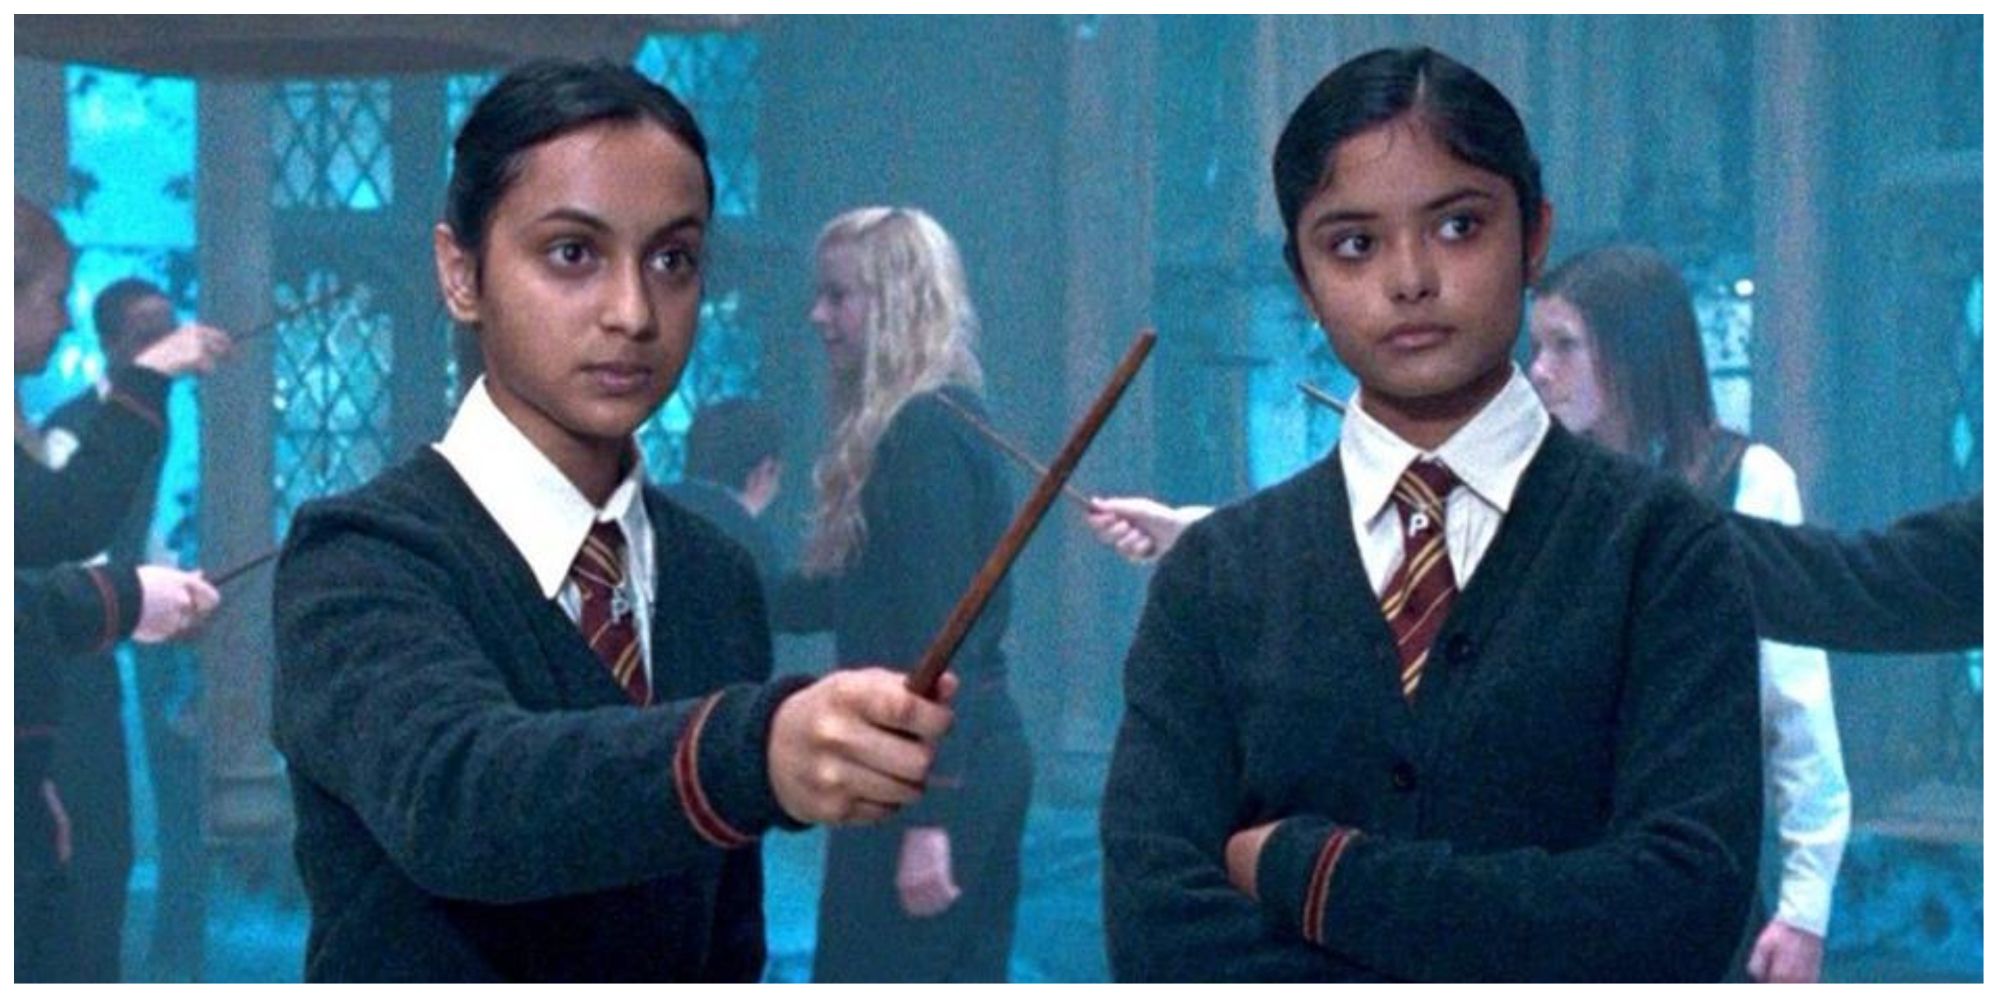 Las gemelas Parvati y Padma Patil aprenden a lanzar un amuleto patronus en la película La Orden del Fénix.